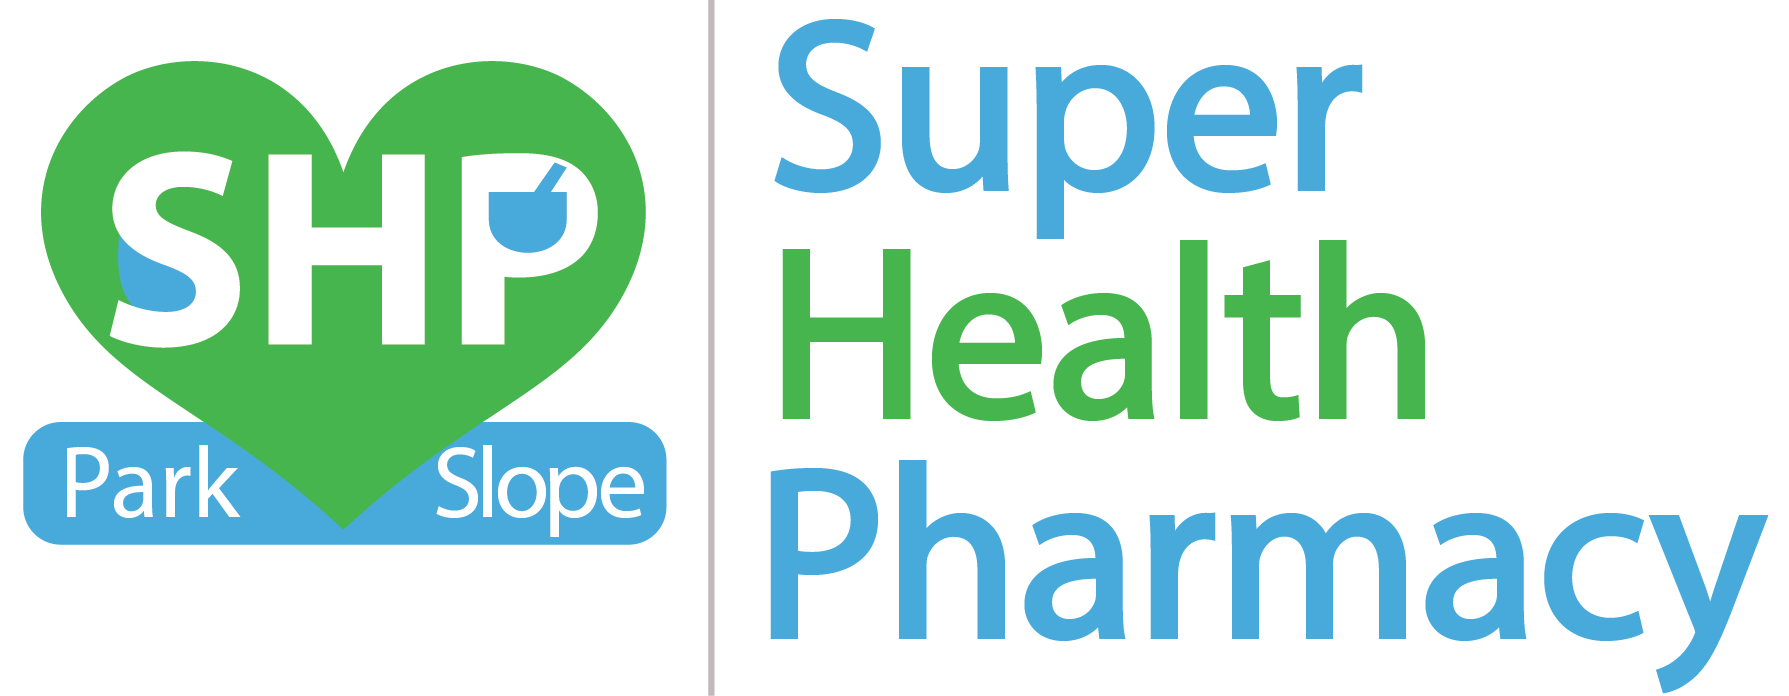 Super Health Pharmacy - Park Slope